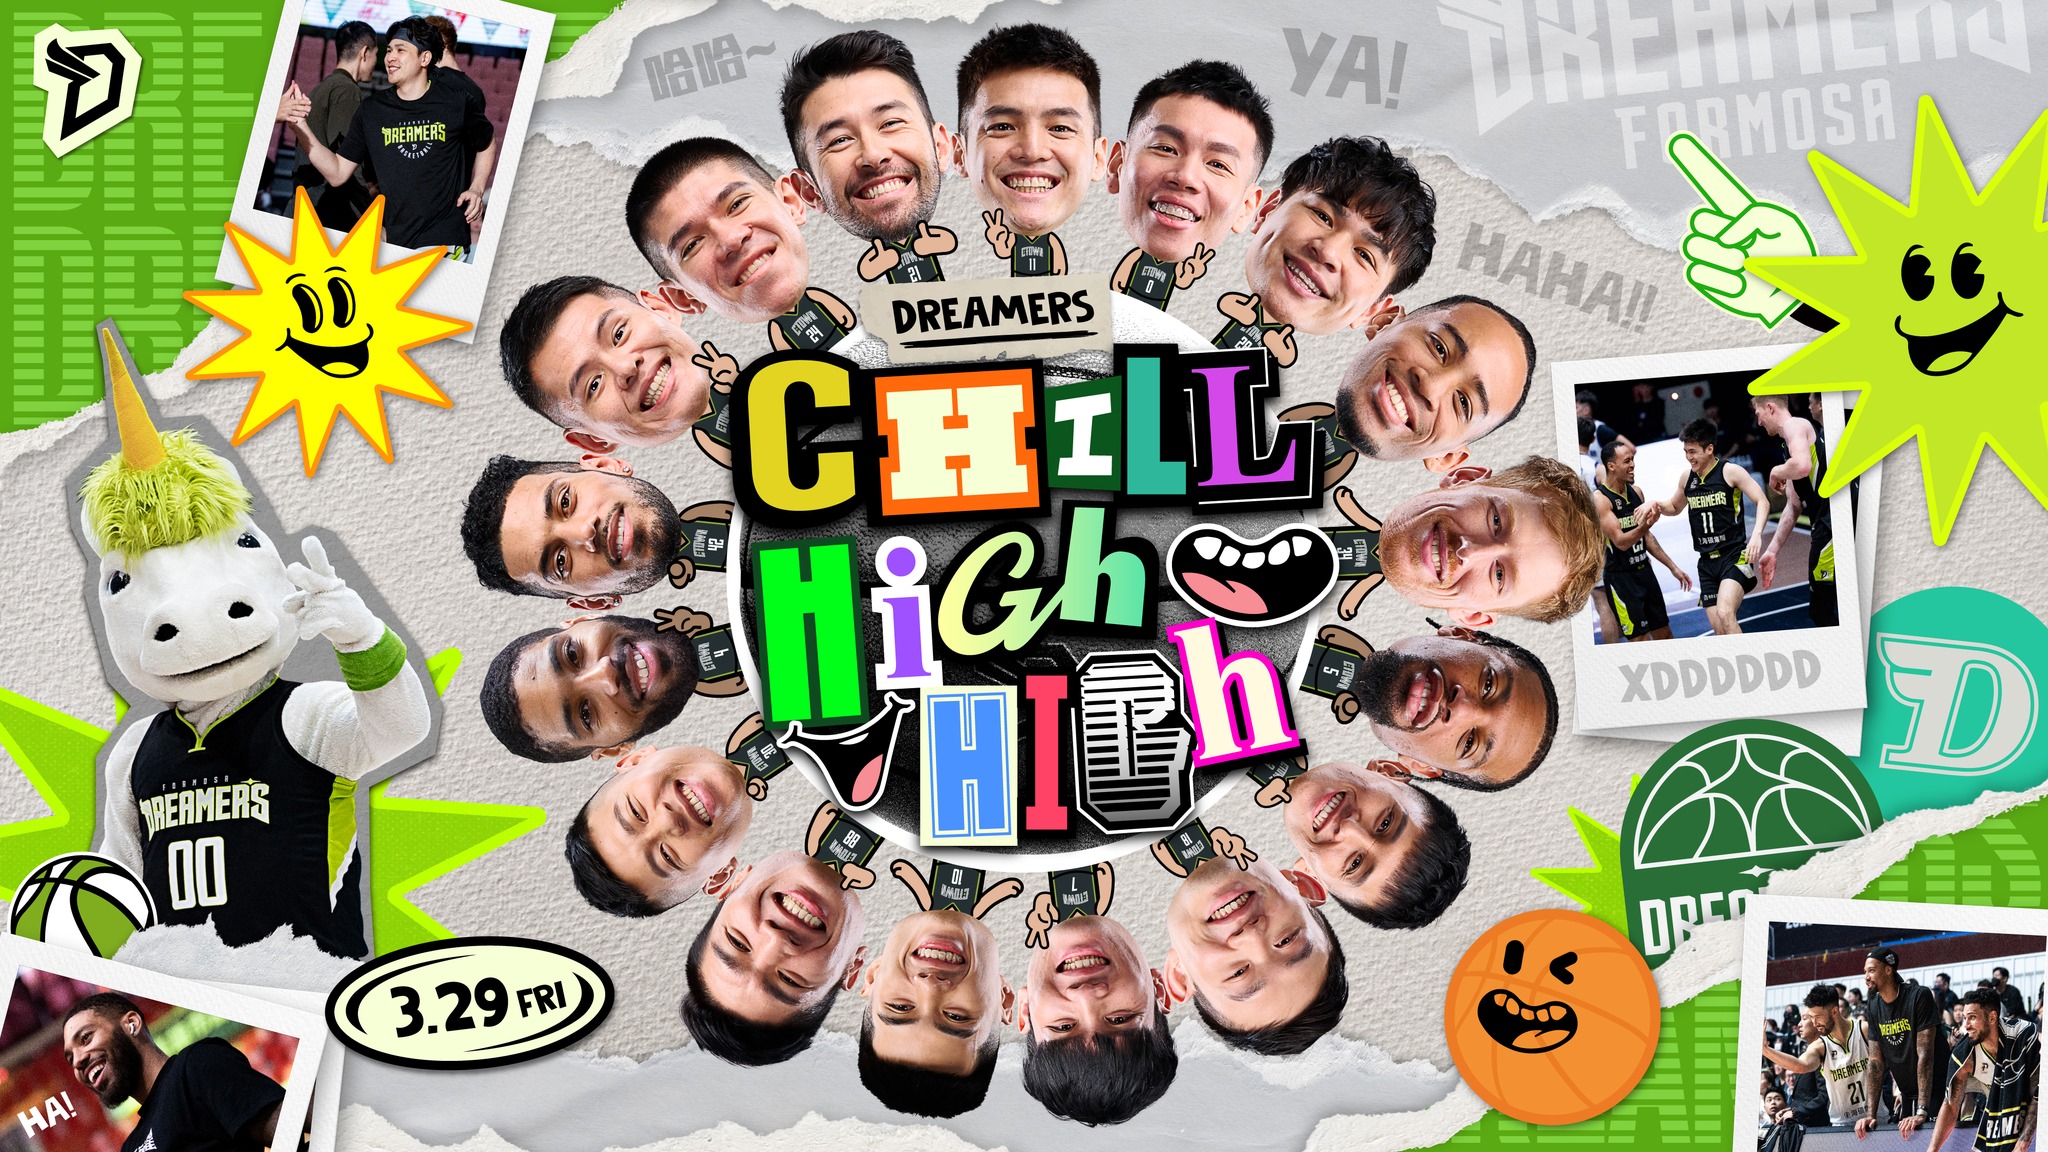 梦想家队推出「Chill High High」主题活动。图／福尔摩沙梦想家队提供